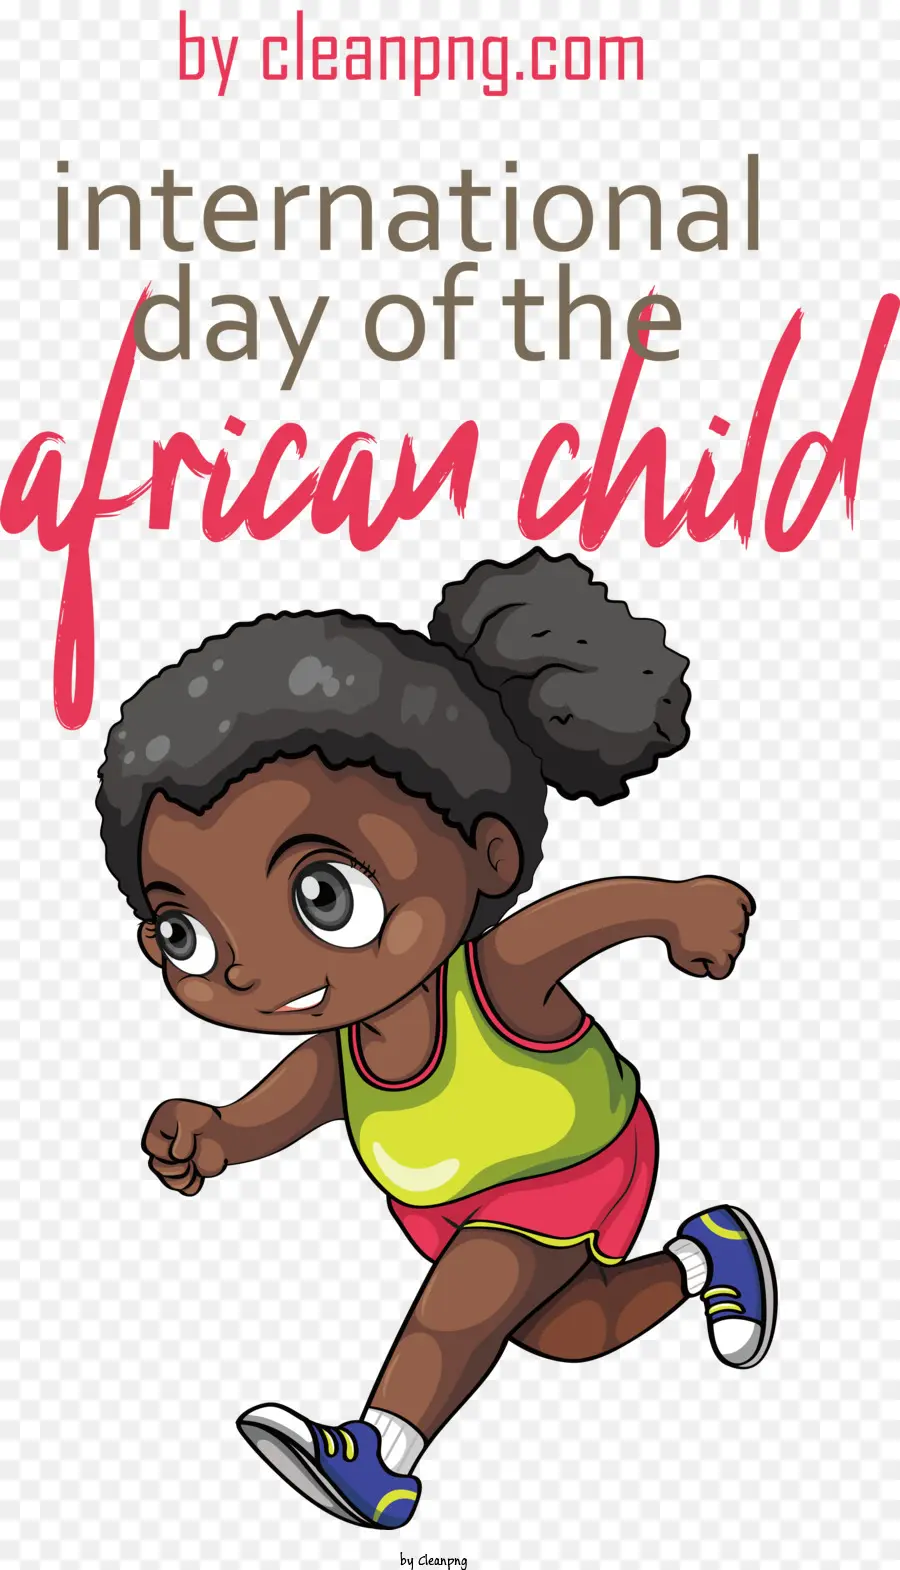 Giornata internazionale del bambino africano africano giorno del bambino africano - 